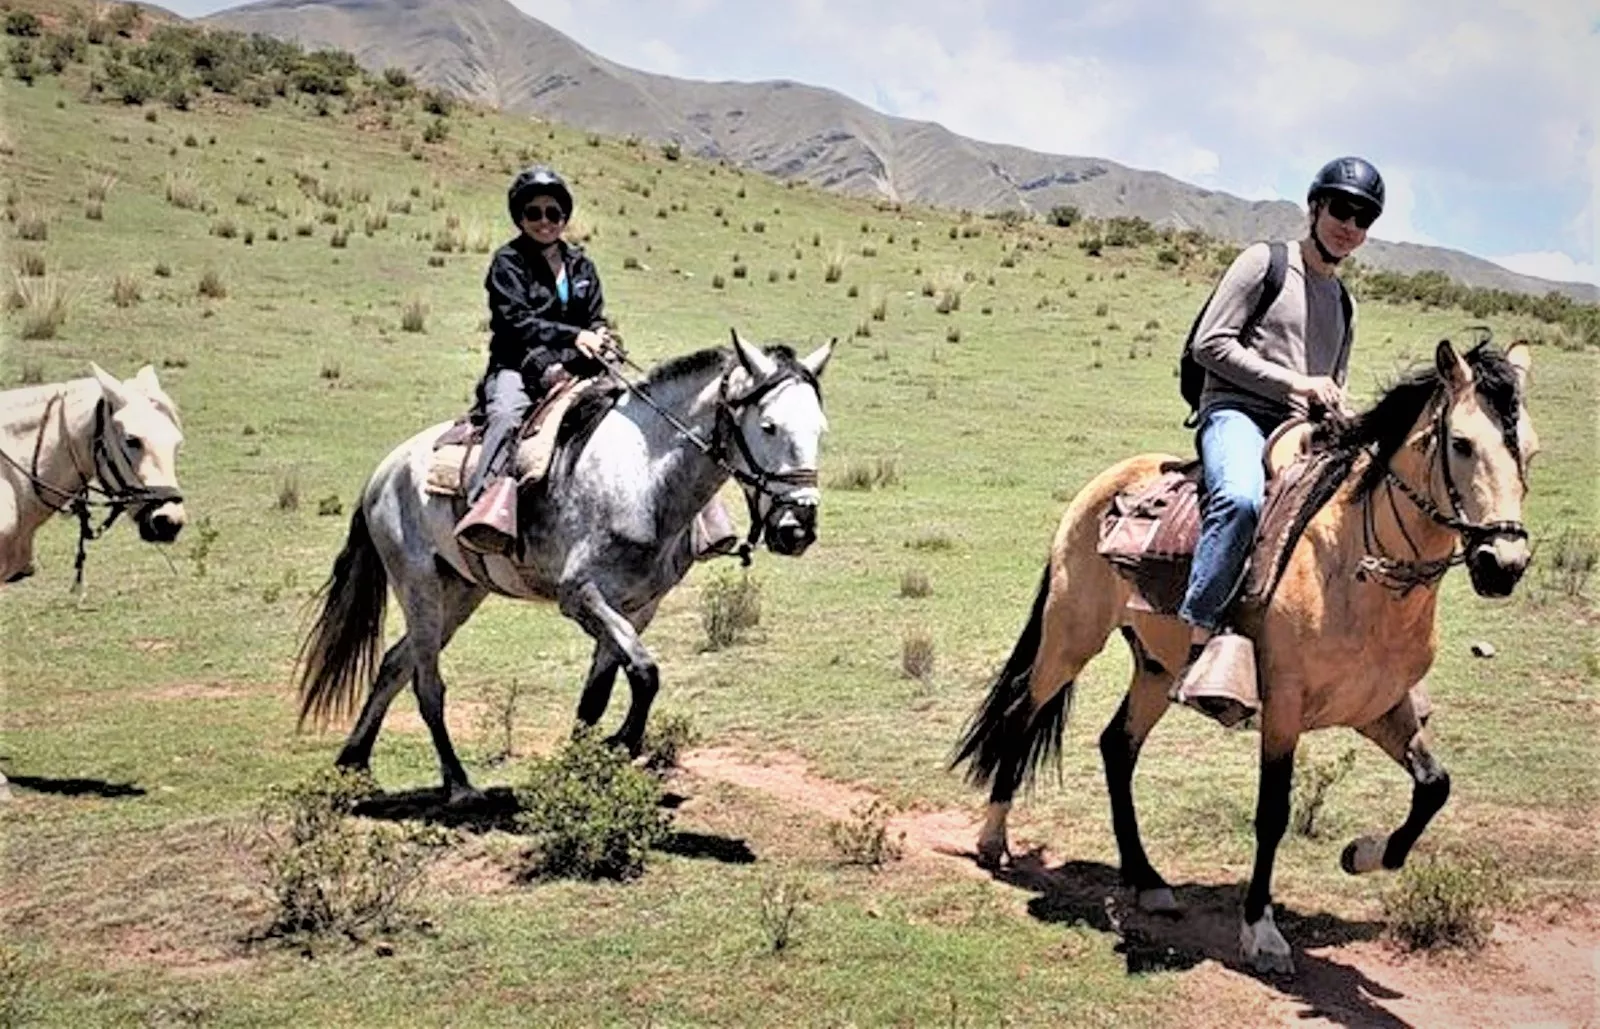 Horseback Riding Cusco in Peru, South America | Horseback Riding - Rated 0.8